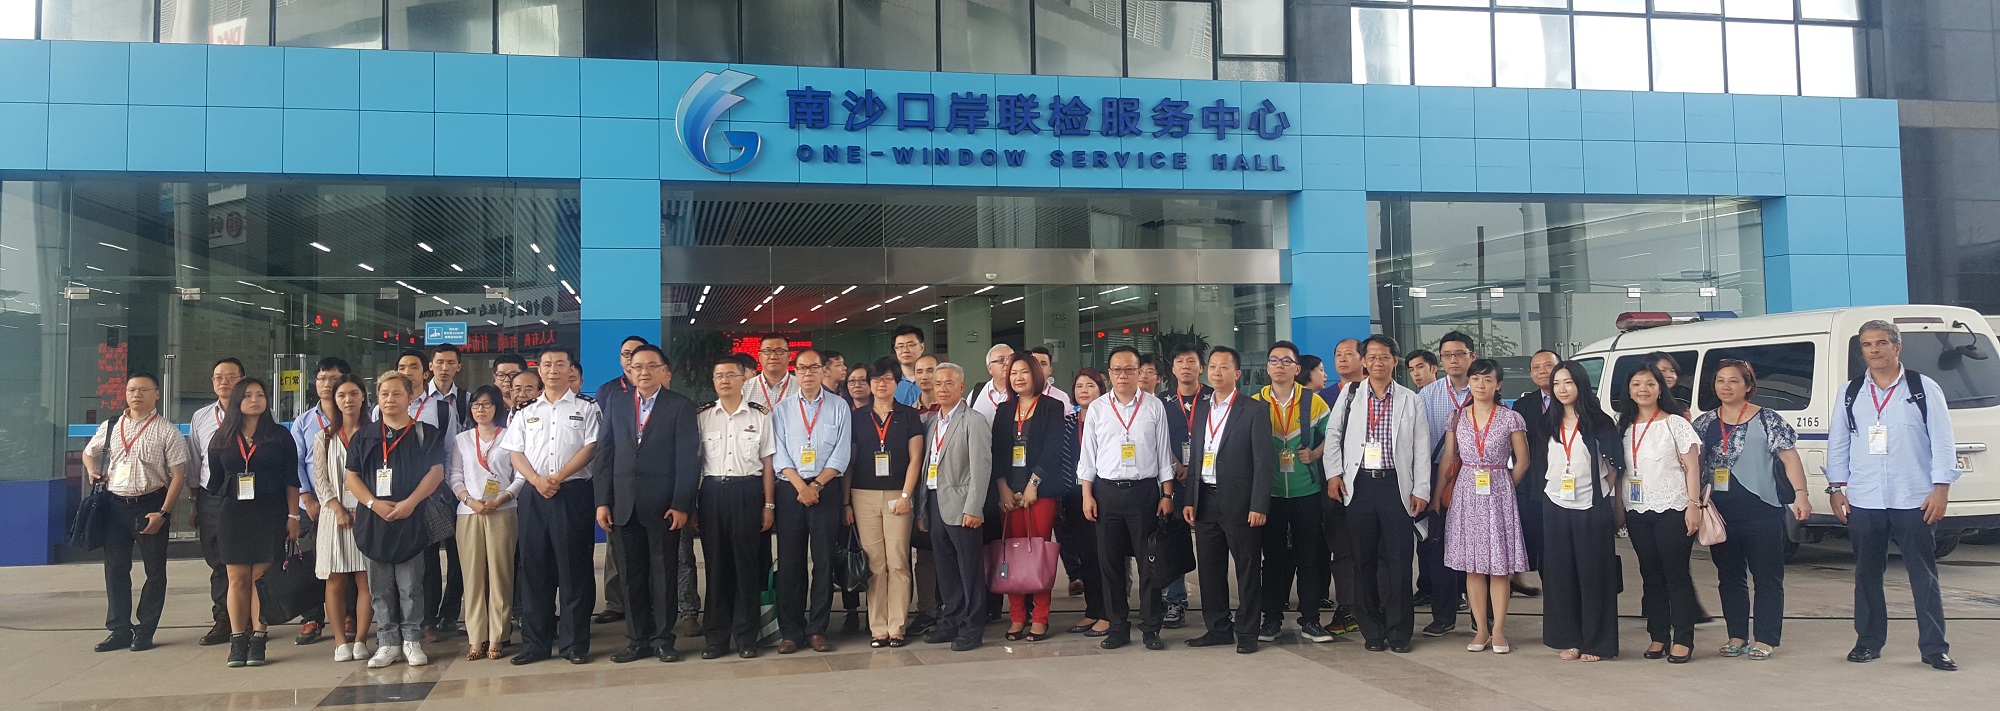 Foto de grupo da delegação de Macau no Centro de Serviço de Inspeção Conjunta no posto fronteiriço de Nansha